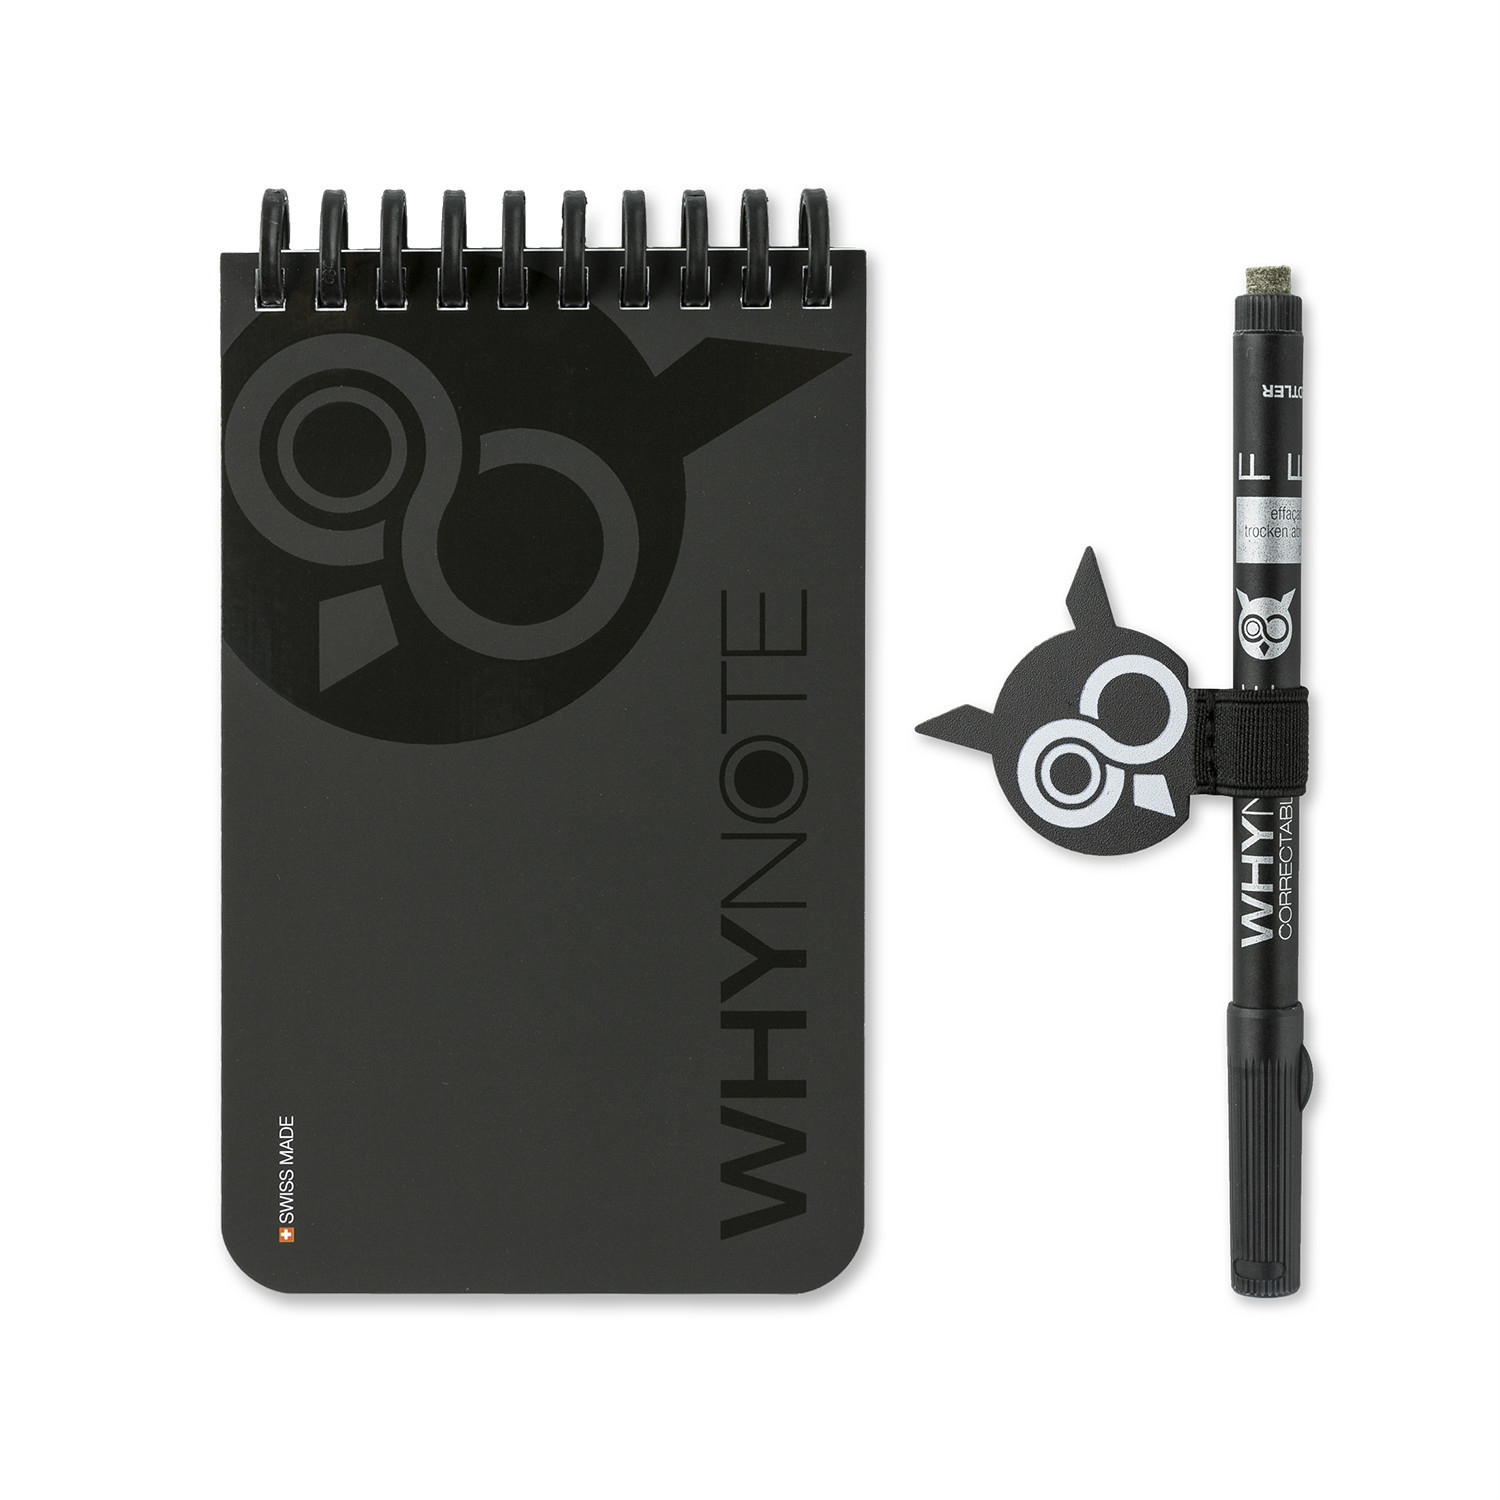 瑞士原产WHYNOTE可擦除可重复使用口袋笔记本套装 黑色